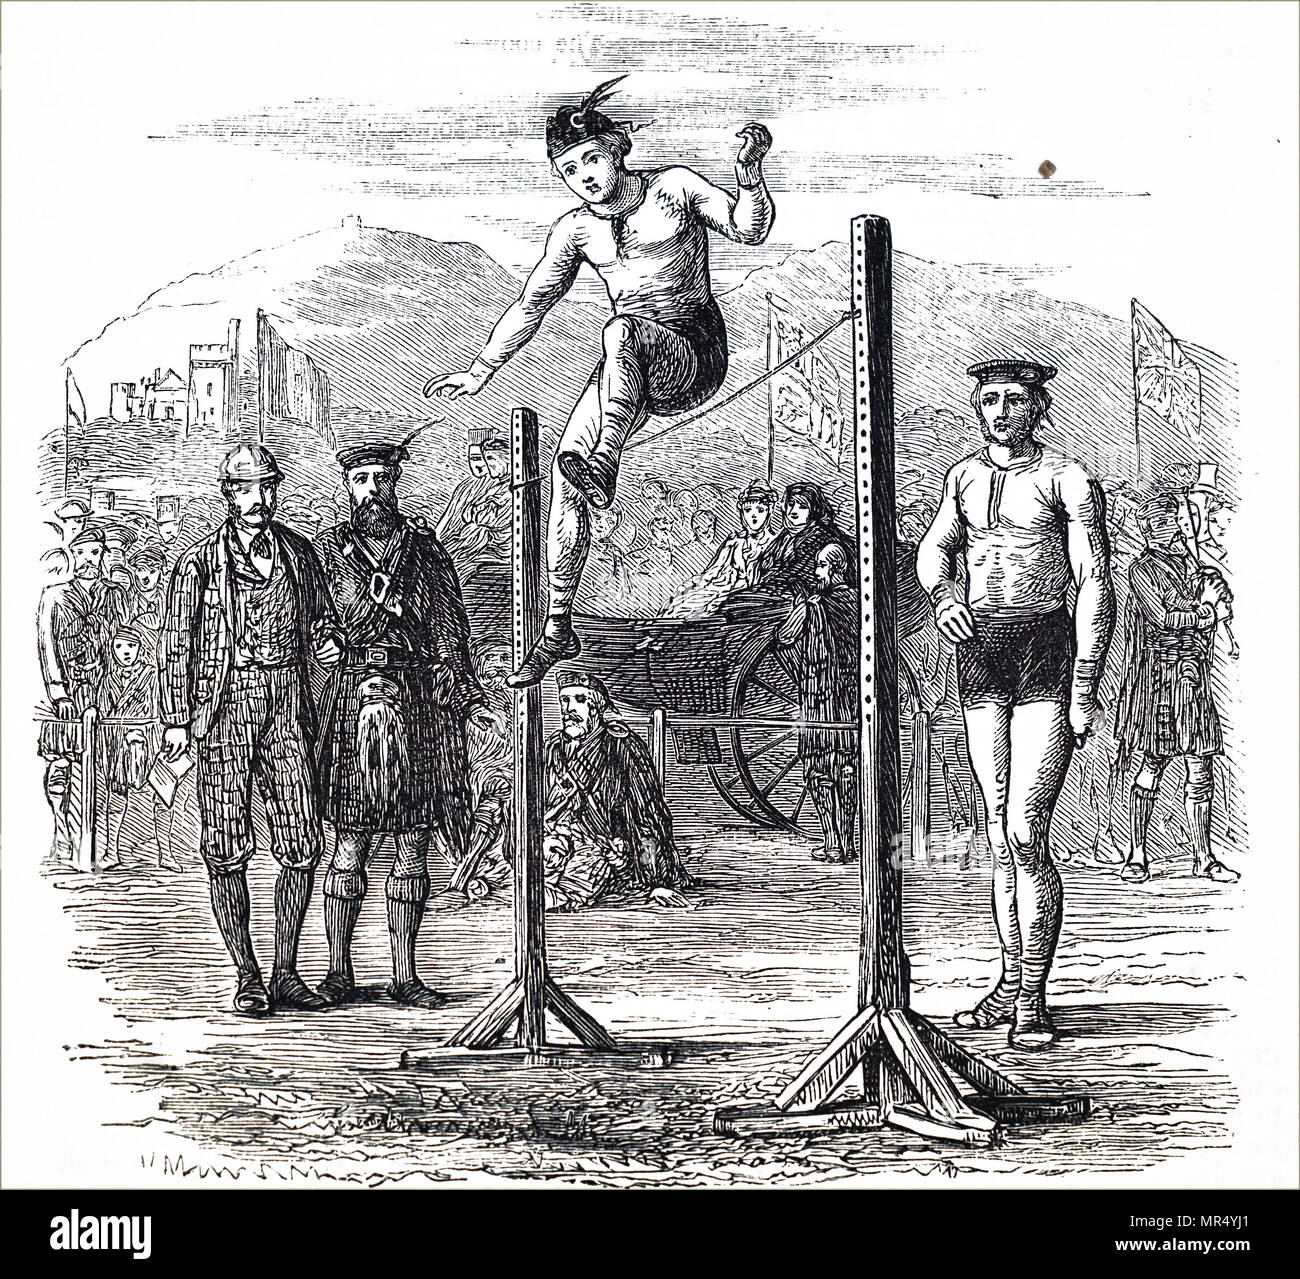 Ilustración que representa un salto de altura en la carrocería durante el Braeuar Highland Games. Fecha del siglo XIX Foto de stock